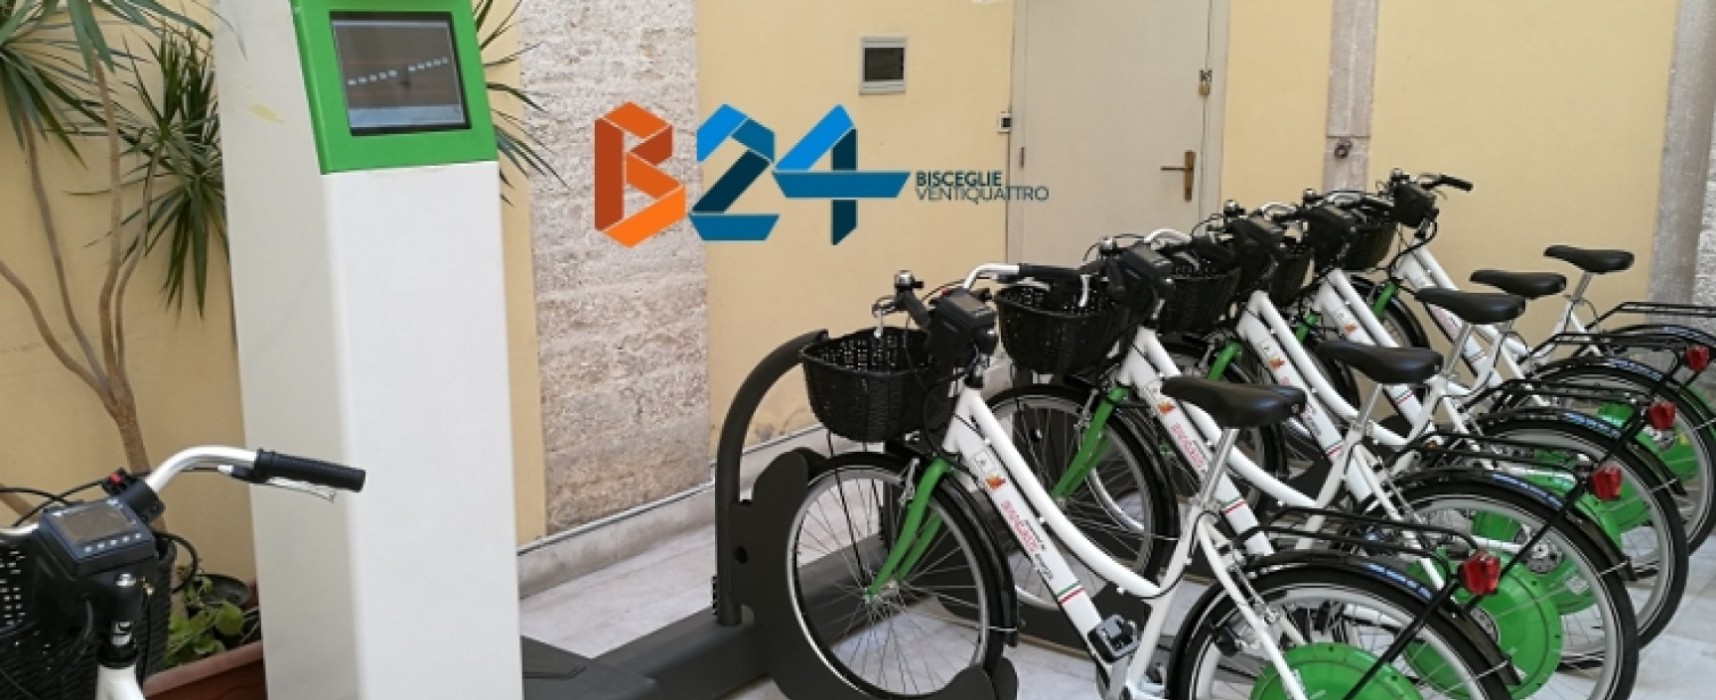 E-Bike 0, rastrelliere non più a Santa Croce ma a palazzo Tupputi e palazzo Milazzi